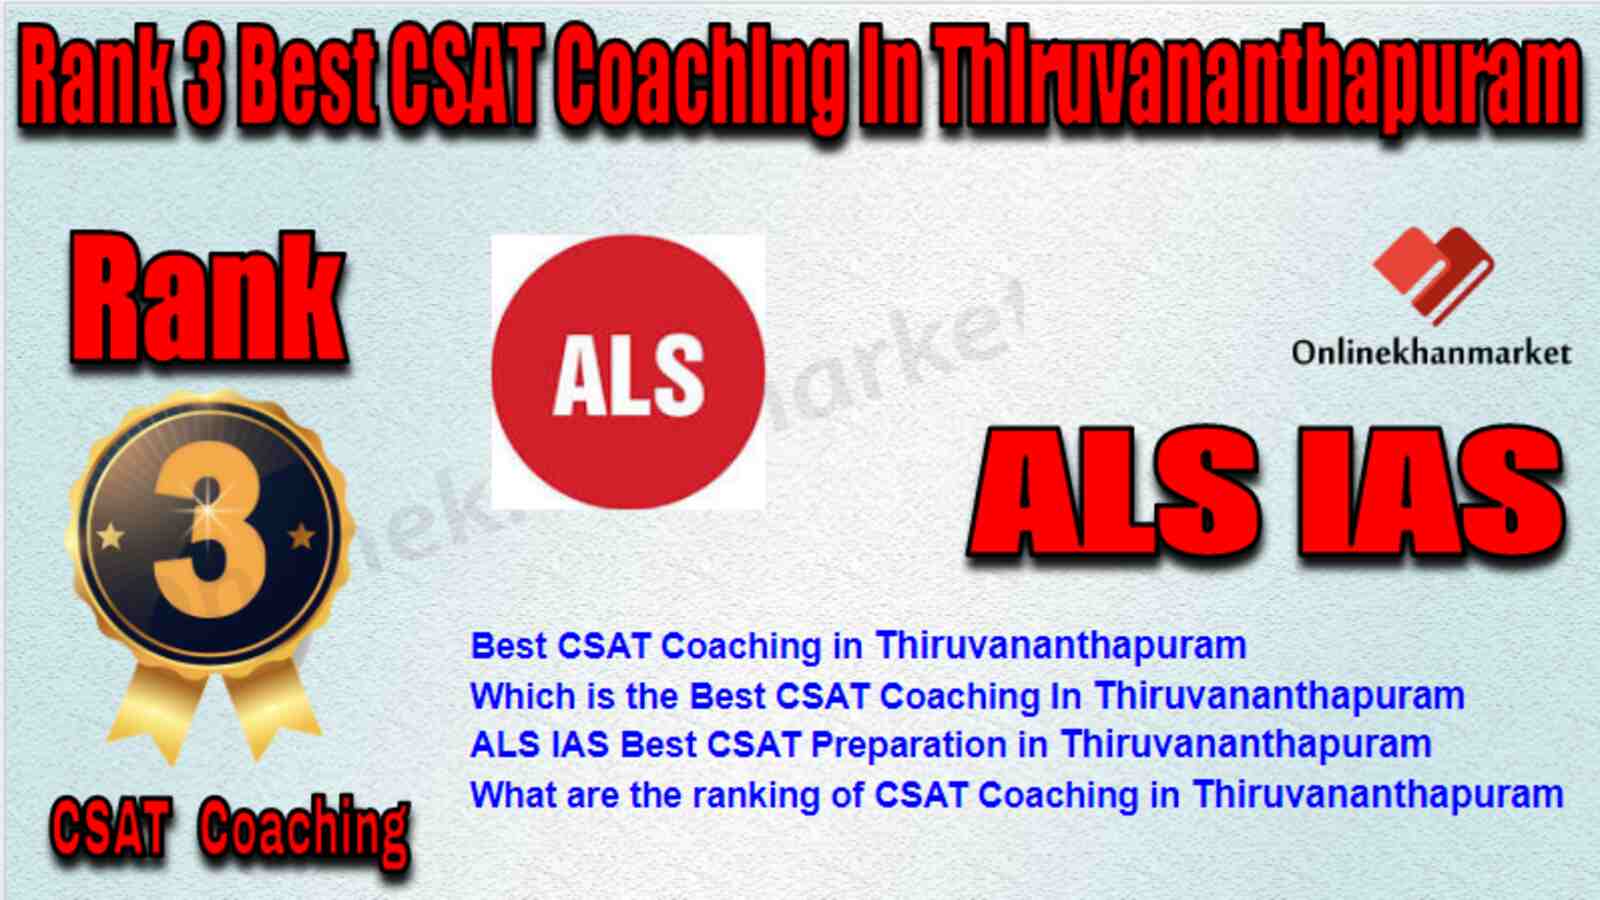 Rank 3 Best CSAT Coaching in Thiruvananthapuram